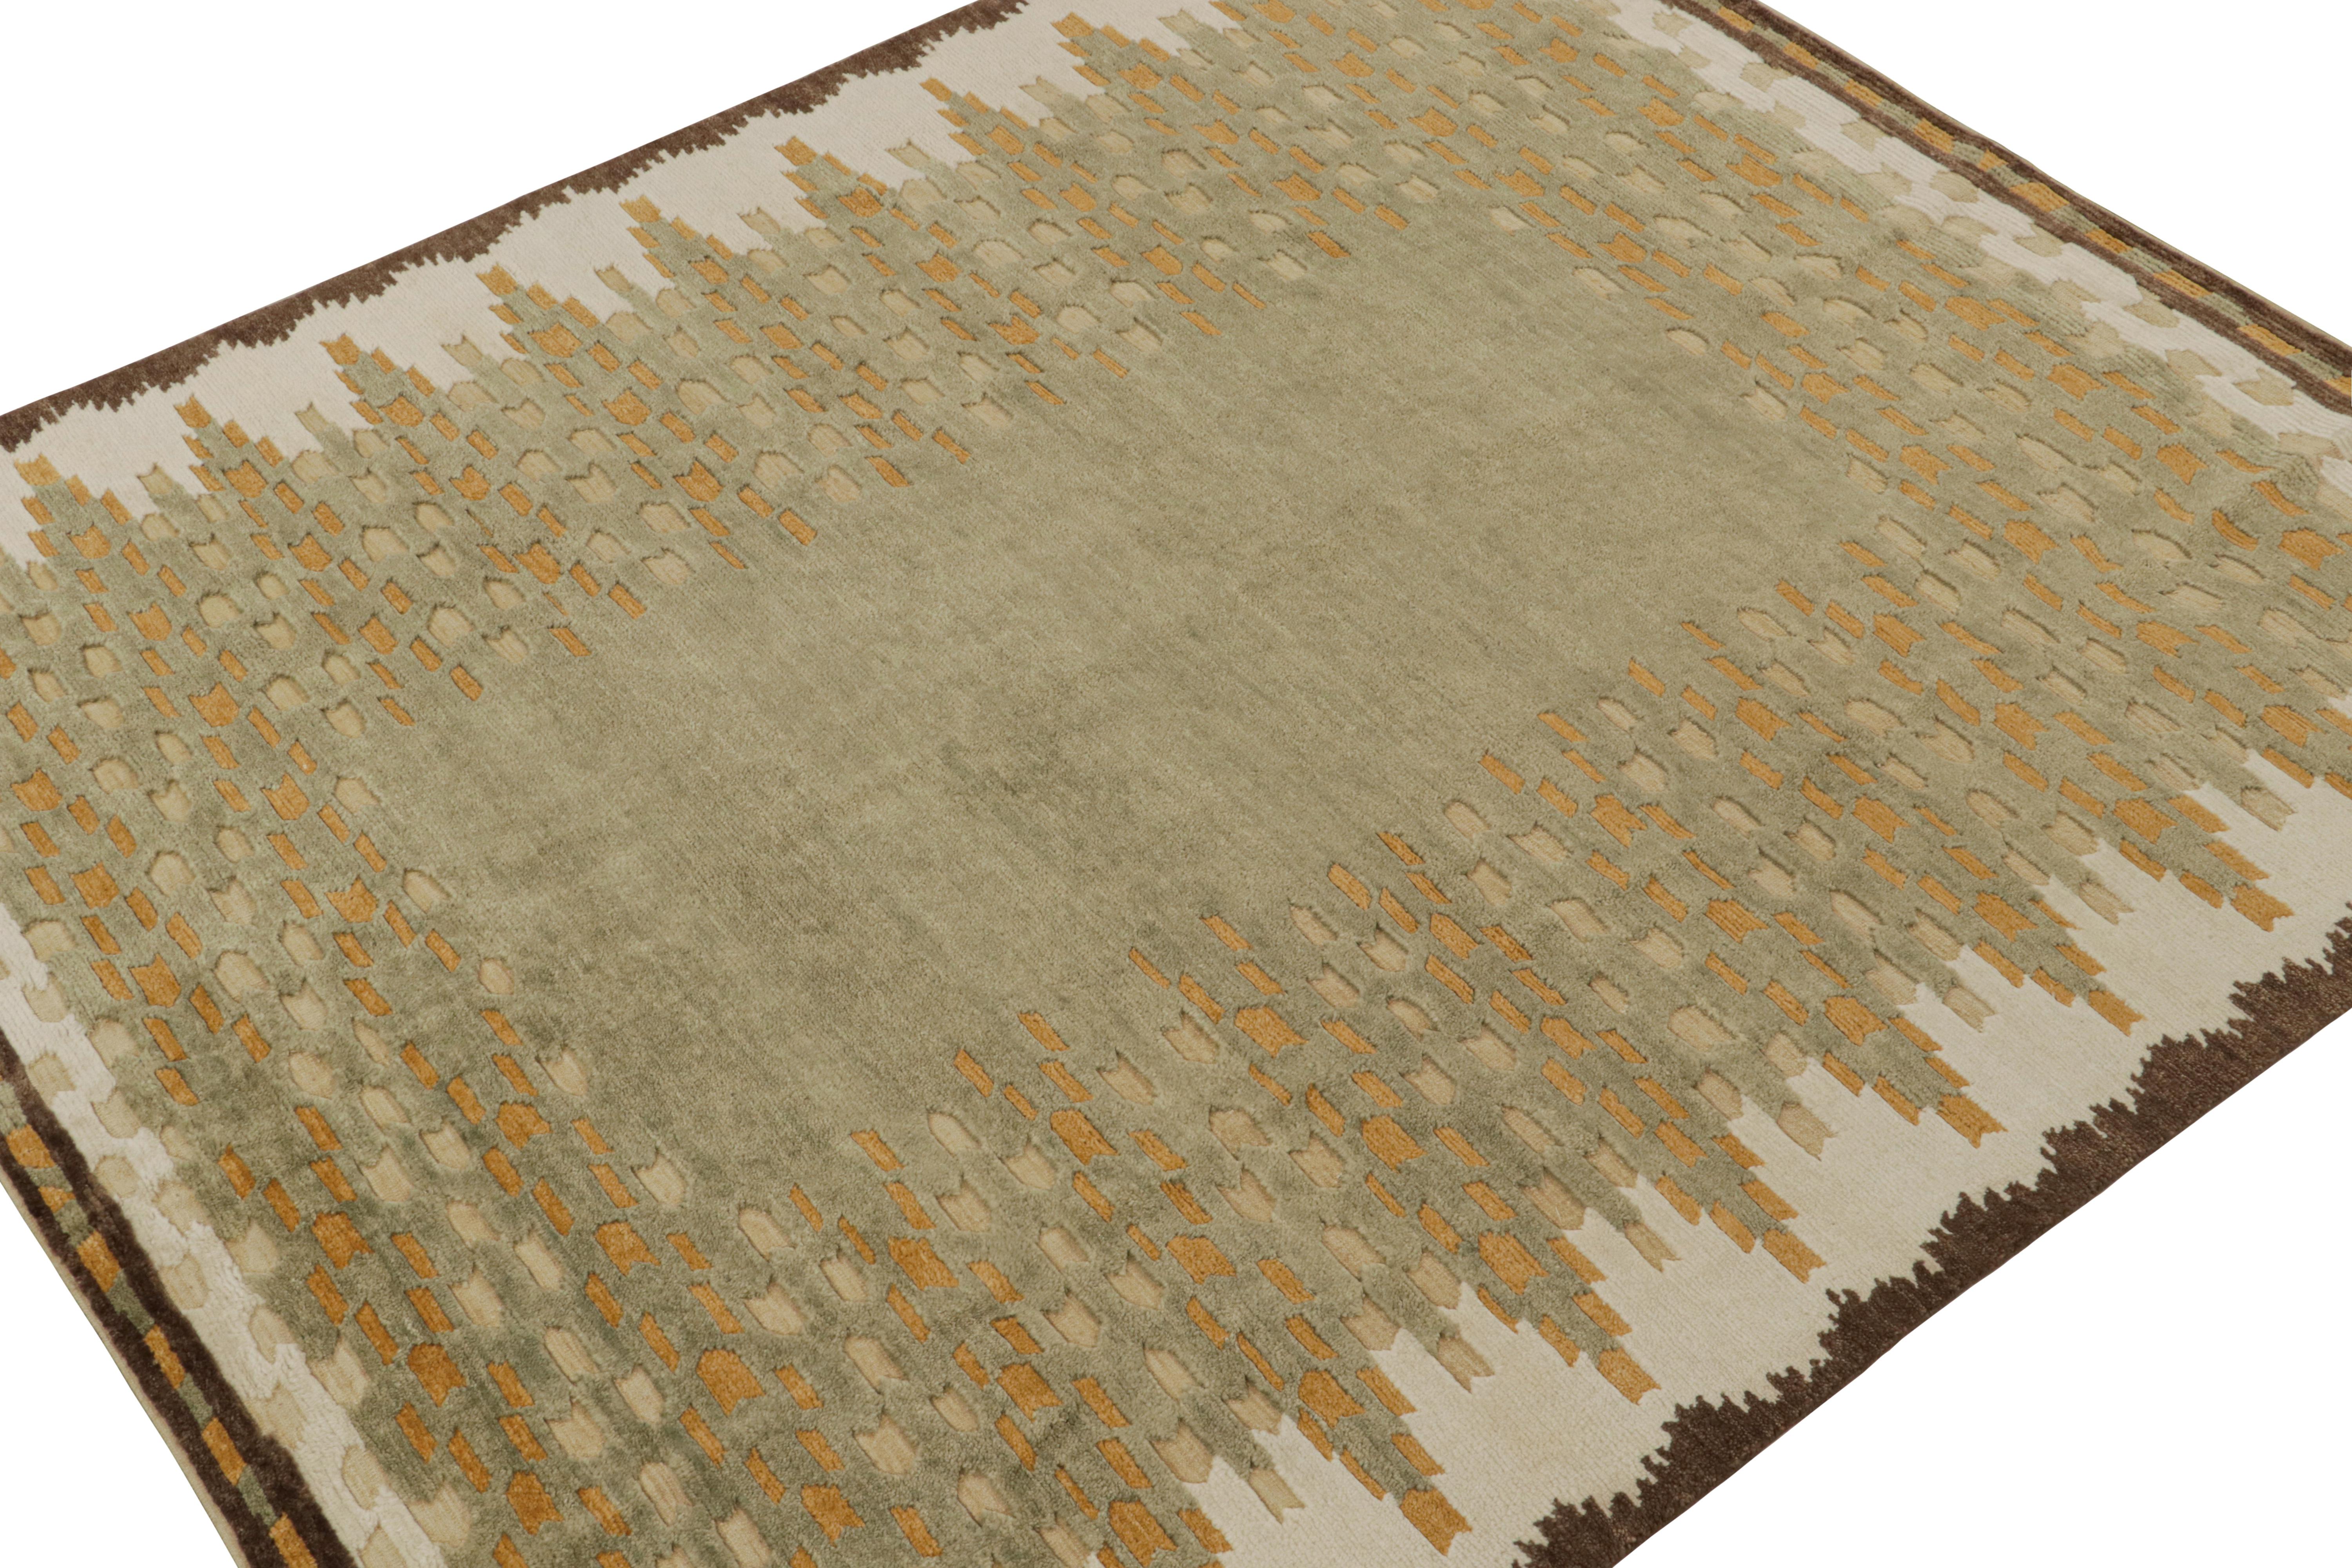 Dieser 8x10 große moderne Teppich aus handgeknüpfter Wolle repräsentiert die Florstruktur der skandinavischen Teppichkollektion von Rug & Kilim.

Über das Design:

Kenner werden ihn als zeitgenössische Neuinterpretation der Rollakhan- und